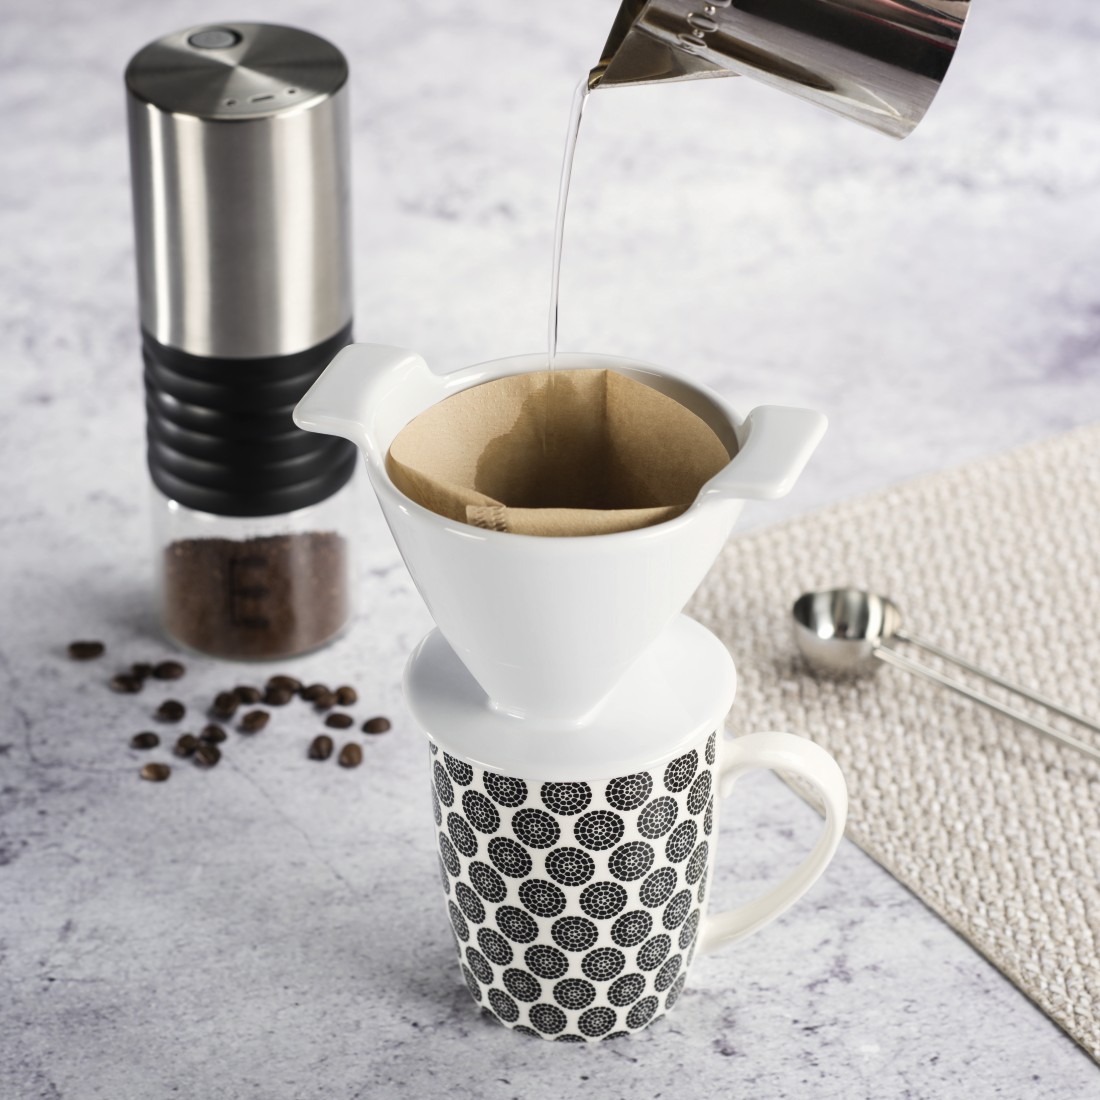 awx2 Druckfähige Anwendung 2 - Xavax, Kaffeefilter aus Porzellan, Größe 4, Weiß